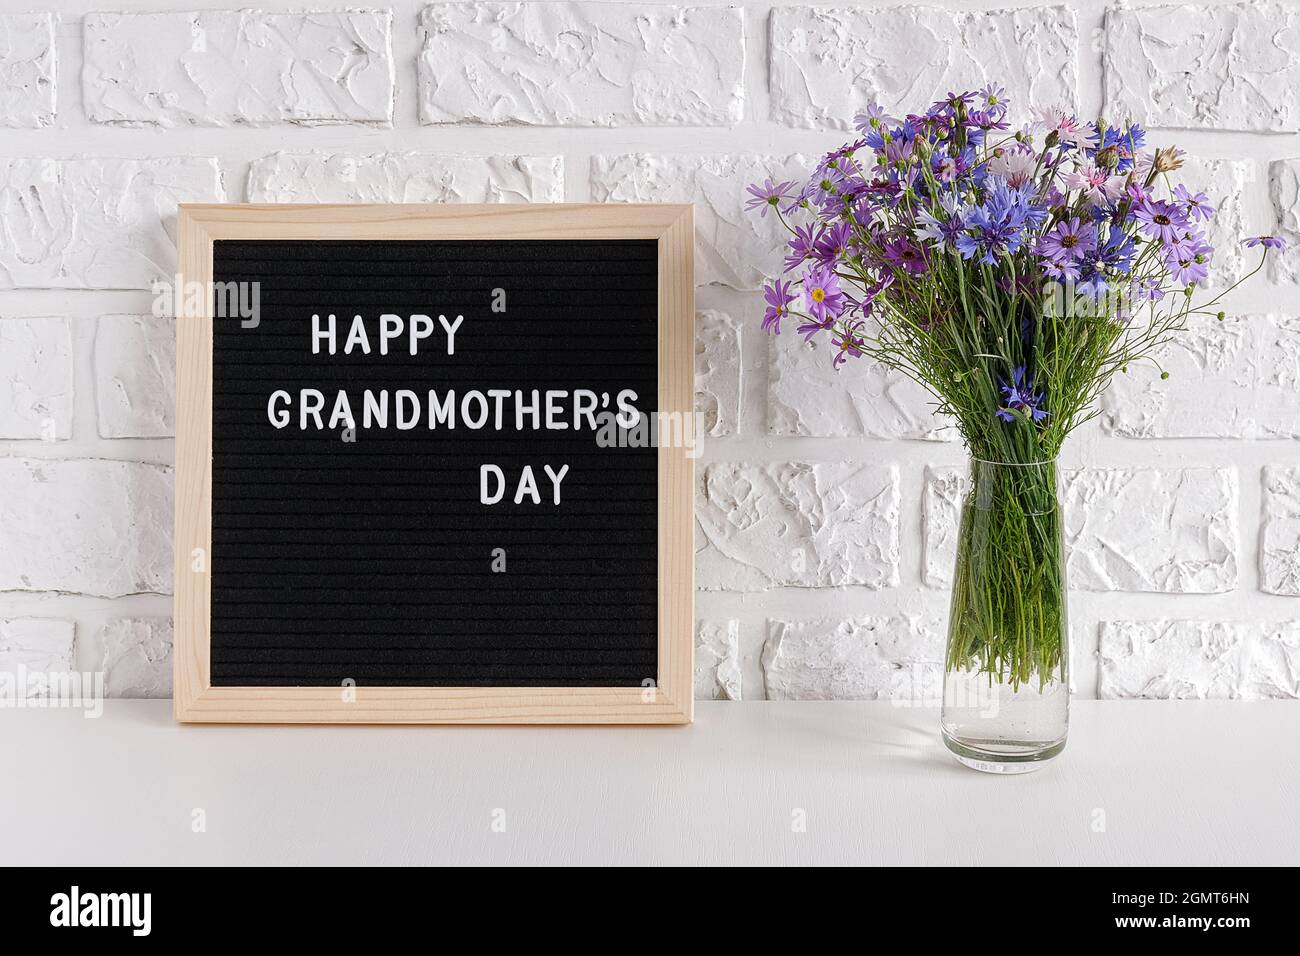 Fröhlicher Großmütter-Tag Text auf schwarzem Briefbrett und Blumenstrauß in blauer Vase auf dem Tisch gegen weiße Ziegelwand. Konzept Muttertag. Vorlage für Stockfoto